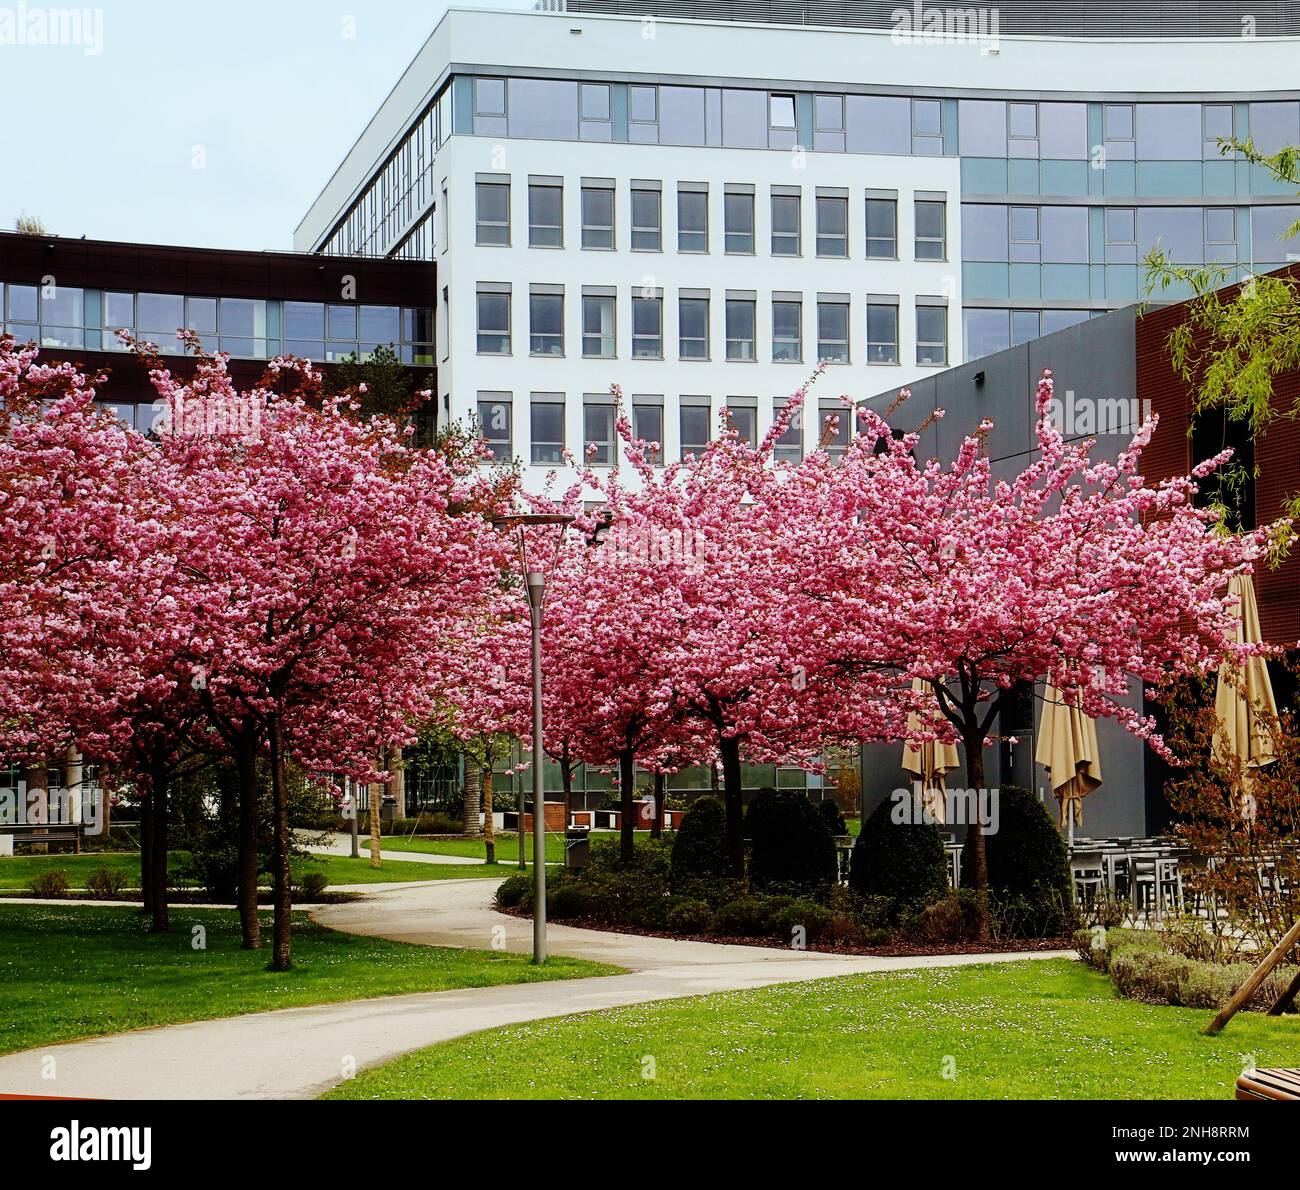 Campus d'affaires Garching près de Munich - bâtiments modernes et cafétéria en plein air sous l'ombre des cerisiers japonais Kanzan à double fleur rose Banque D'Images